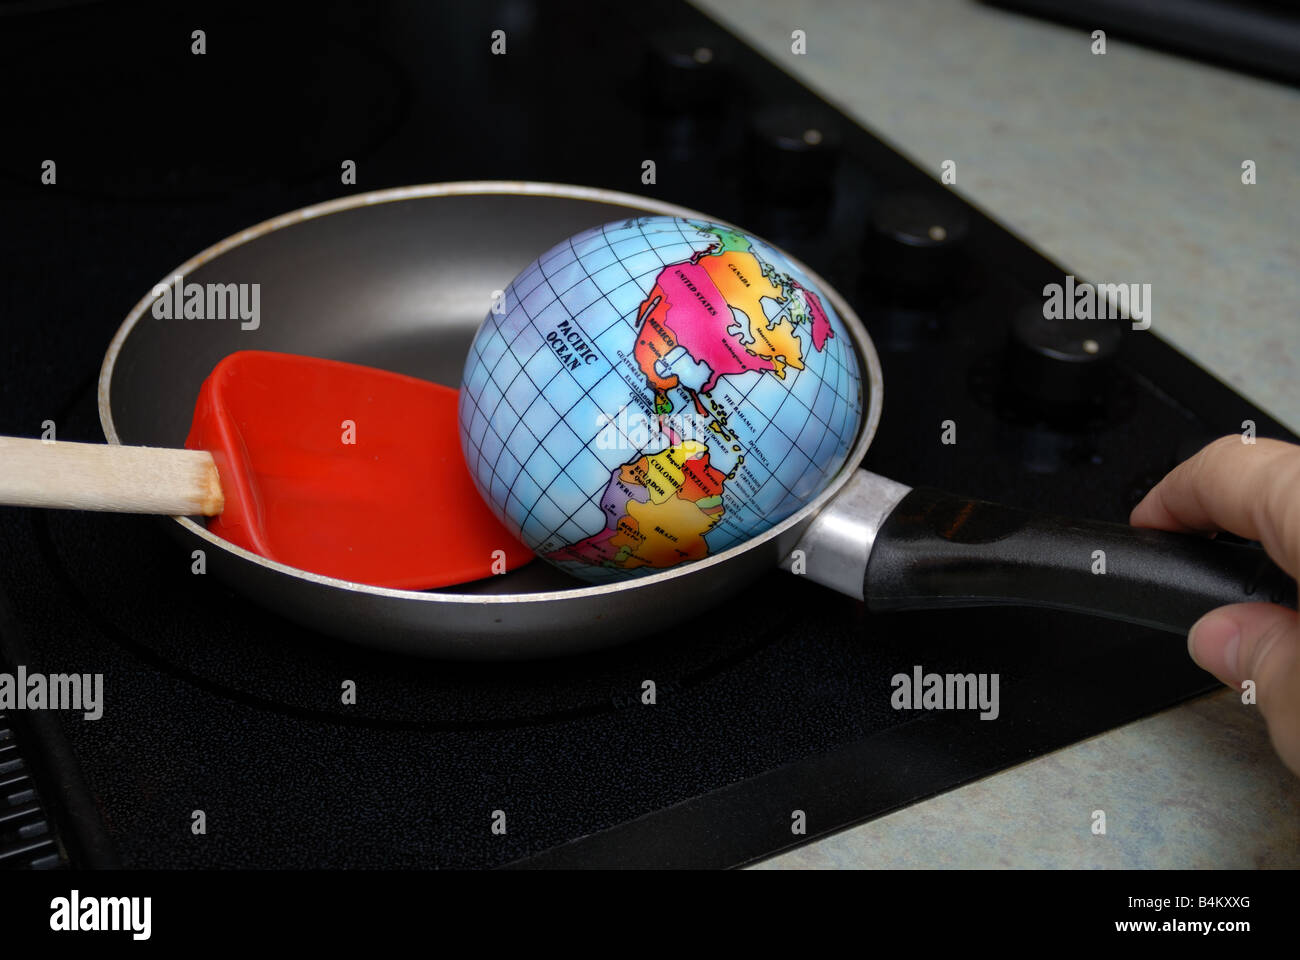 Un globe est montré être frit dans une poêle, sur un brûleur cuisinière représentant le concept de réchauffement global Banque D'Images